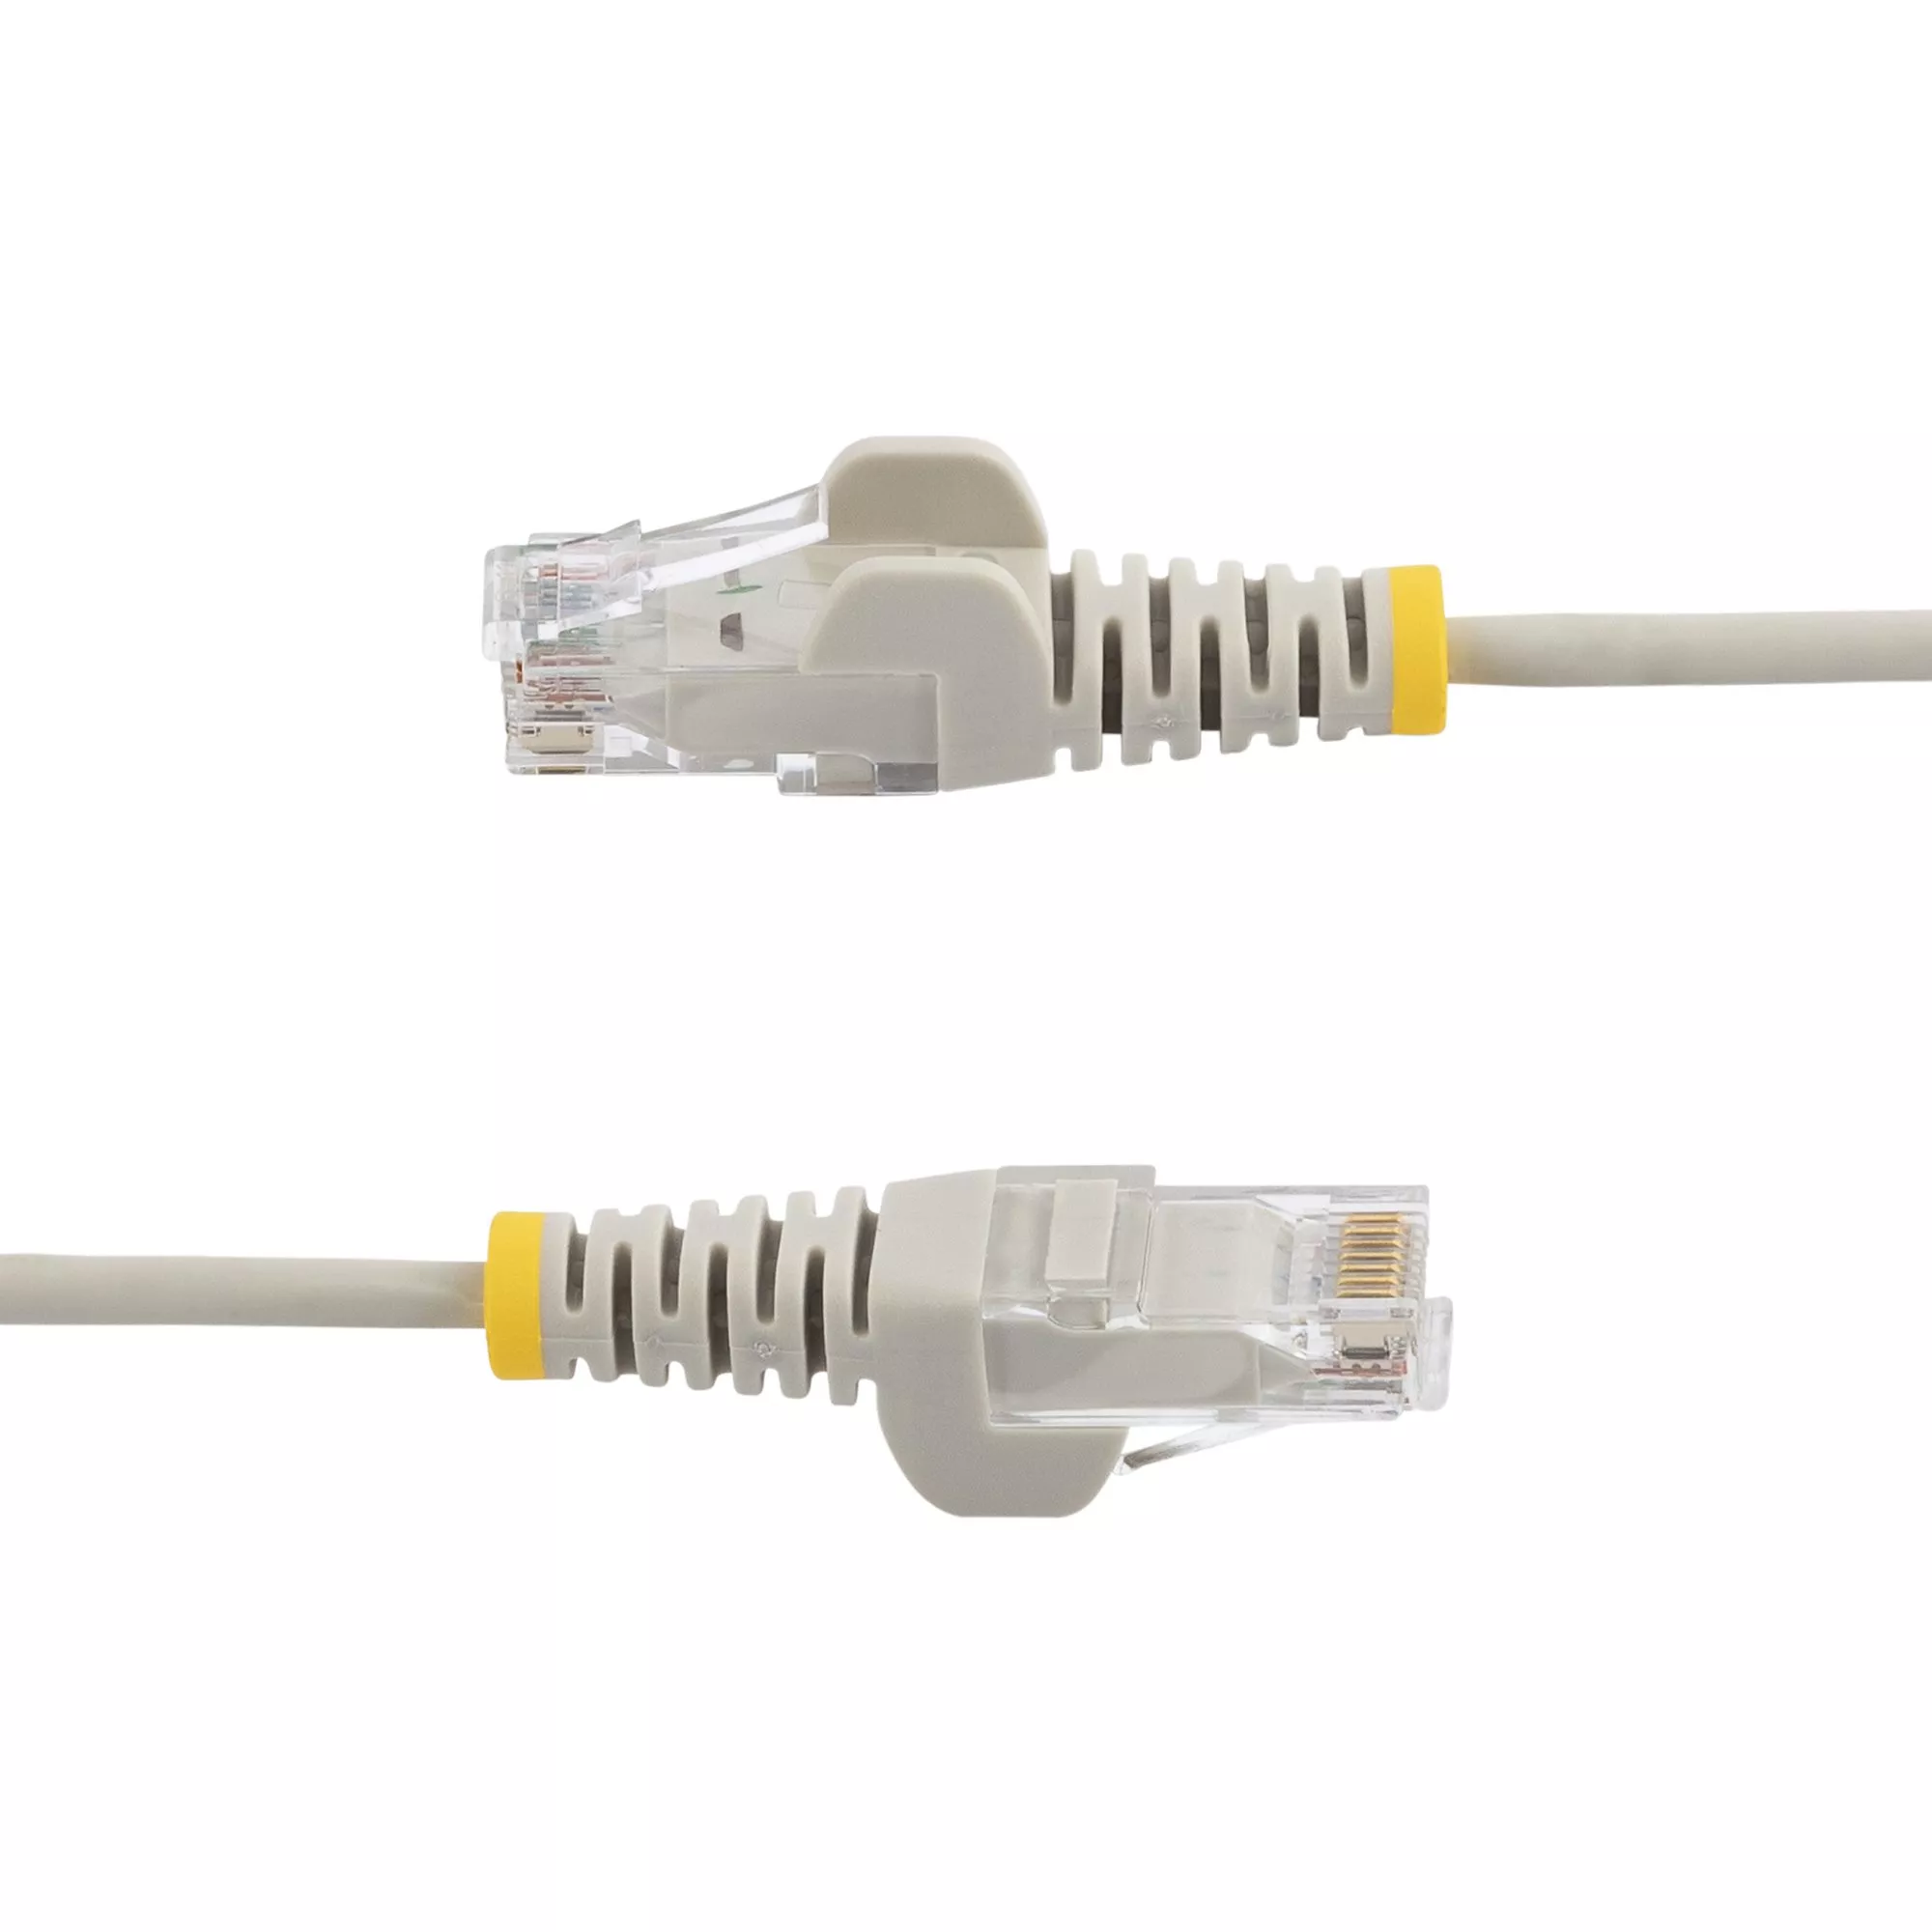 Achat StarTech.com Câble réseau Ethernet RJ45 Cat6 de 1 sur hello RSE - visuel 3